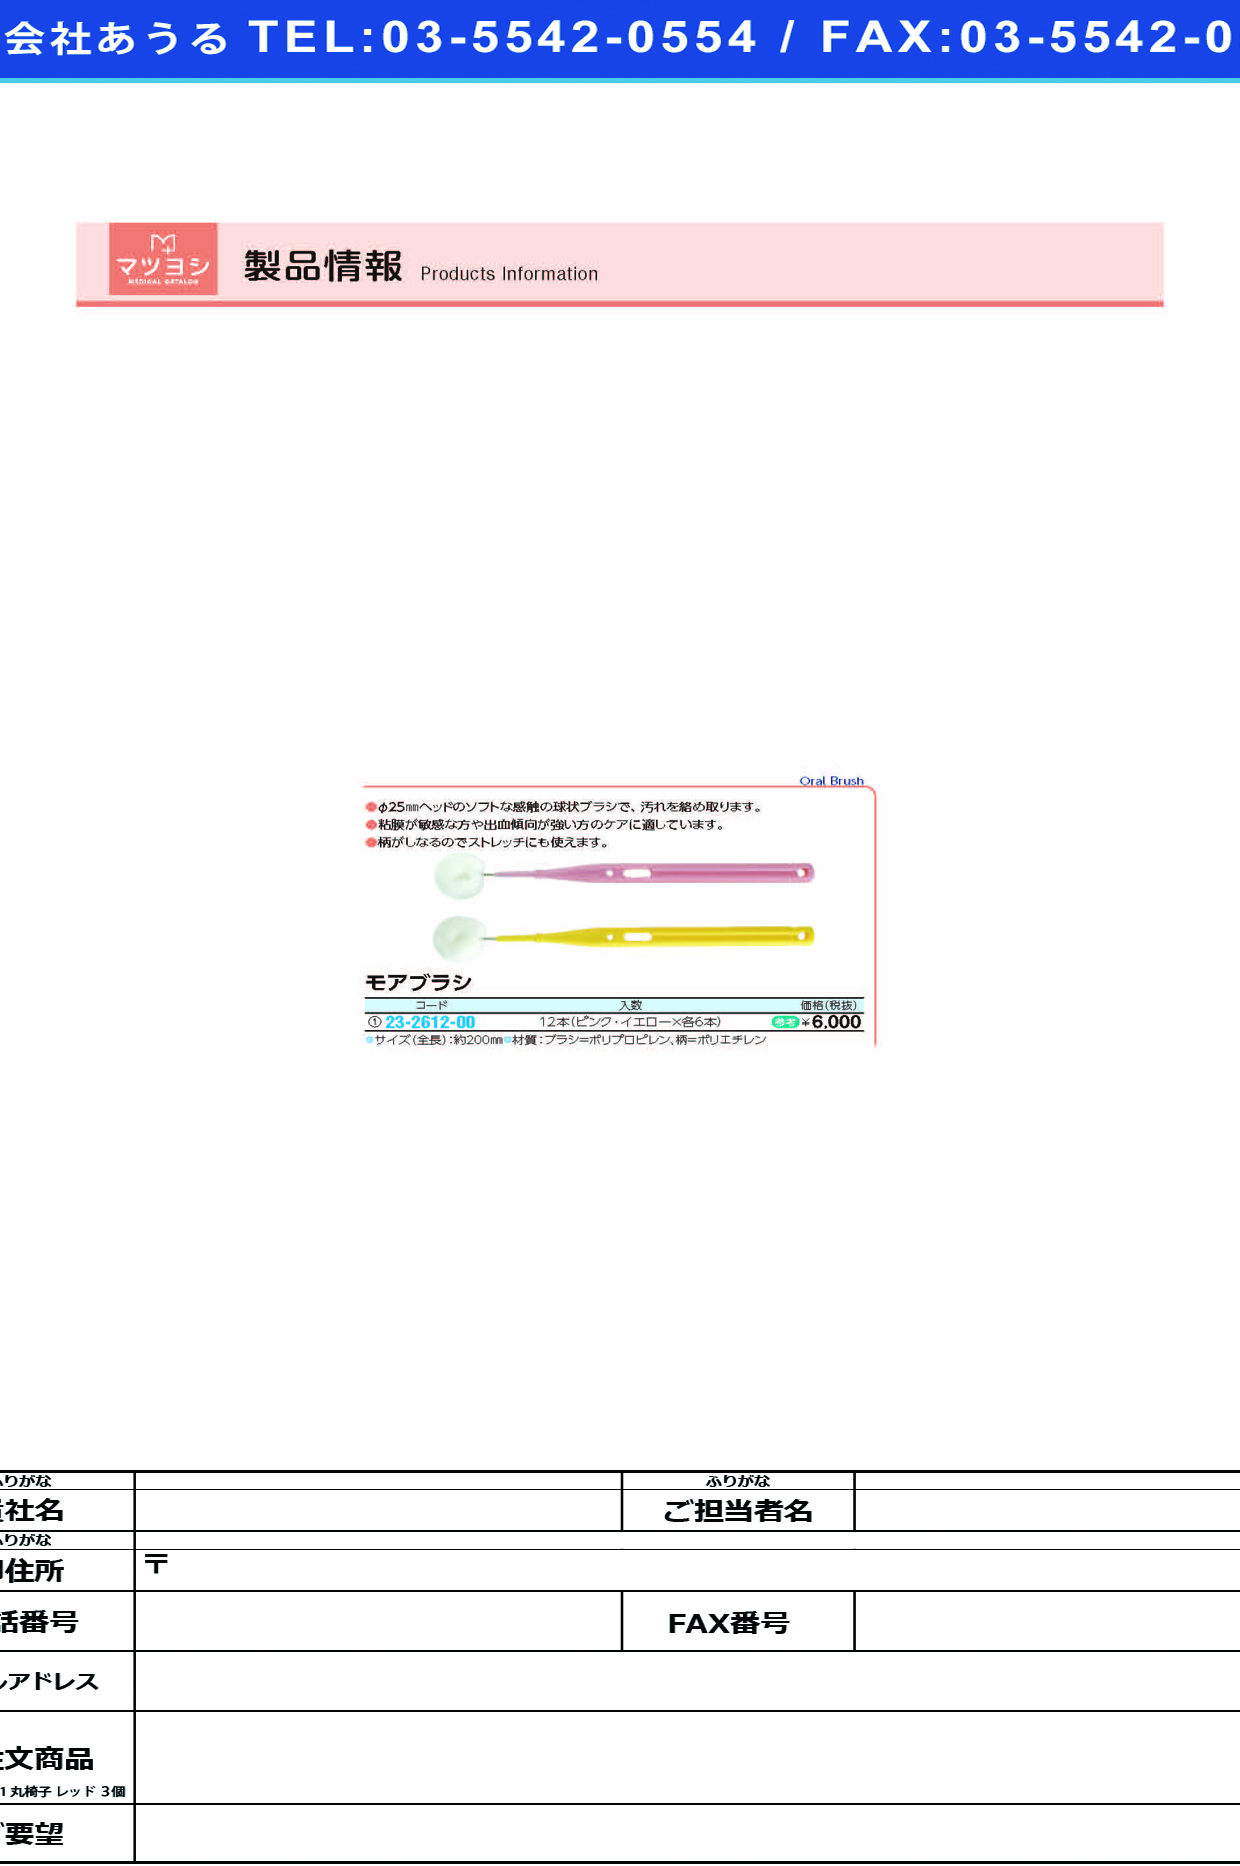 (23-2612-00)モアブラシ 12ｲﾘ(ﾋﾟﾝｸX6･ｲｴﾛｰX6) ﾓｱﾌﾞﾗｼ【1箱単位】【2019年カタログ商品】